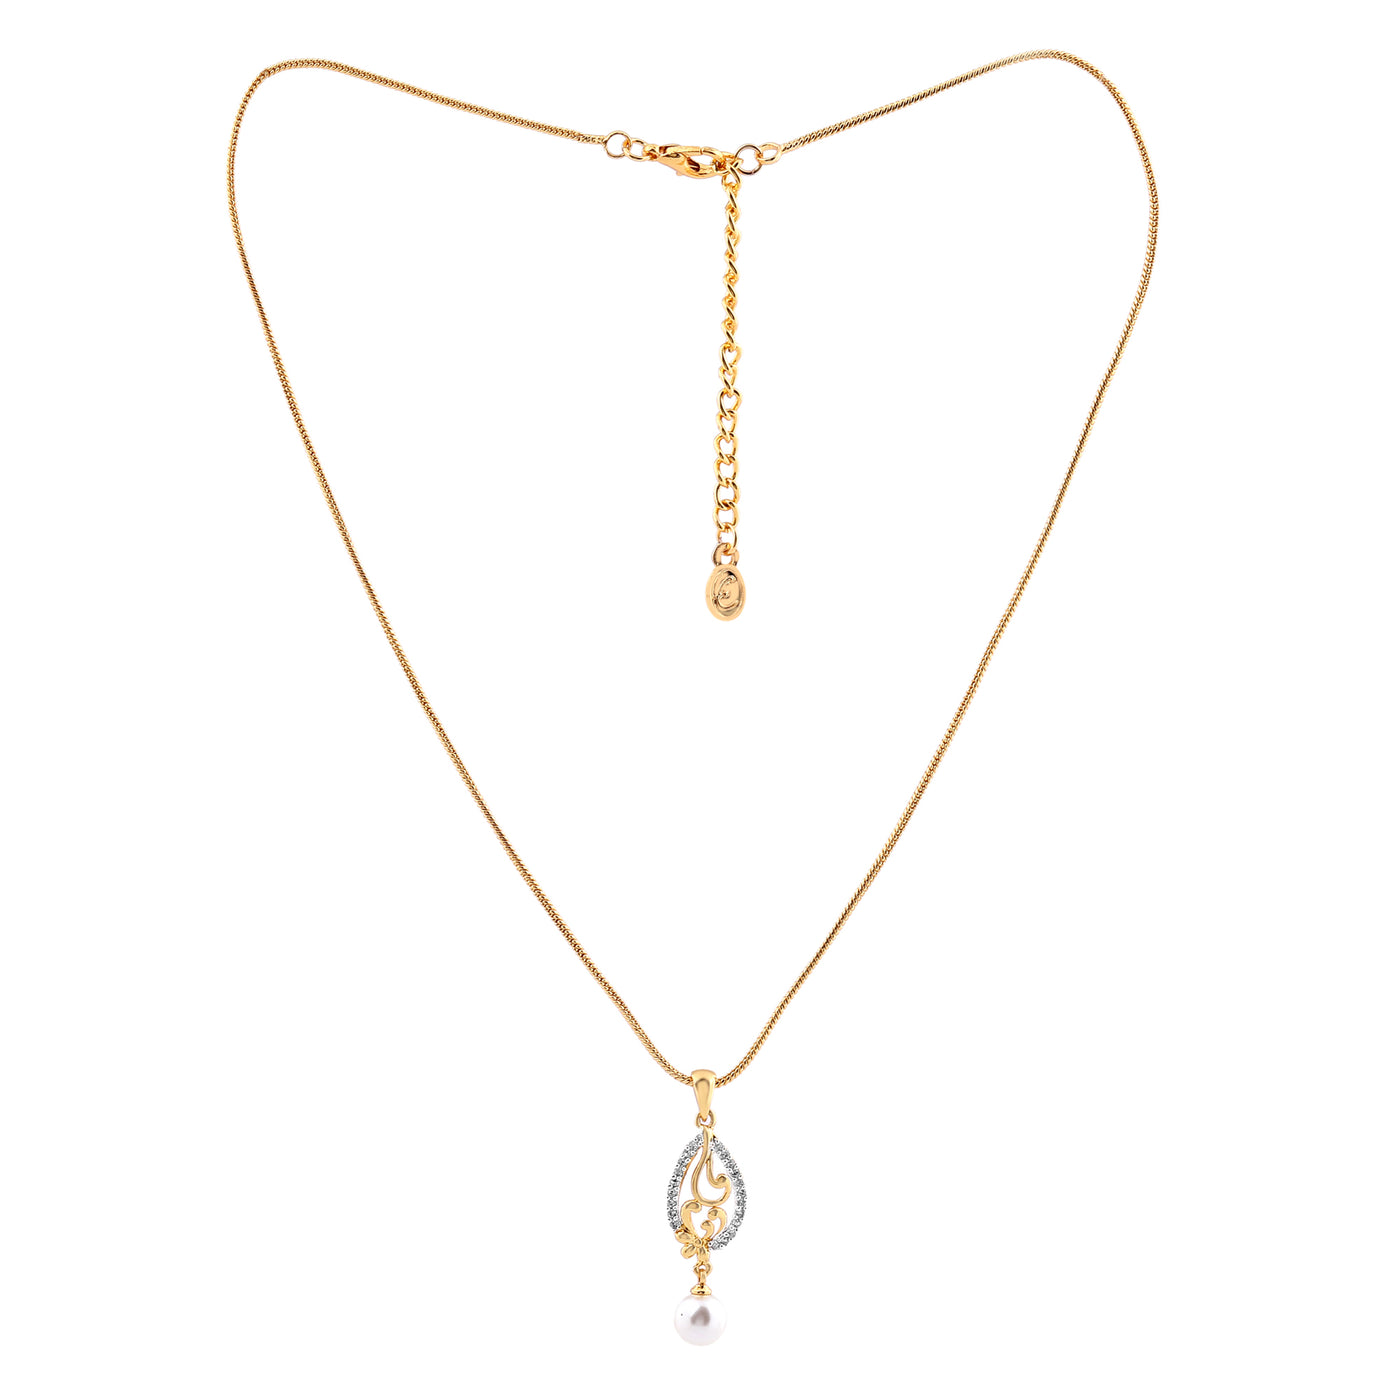 Estele 24 Kt Gold Plated CZ Leaf Designer Pendant Set with Pearls for Women